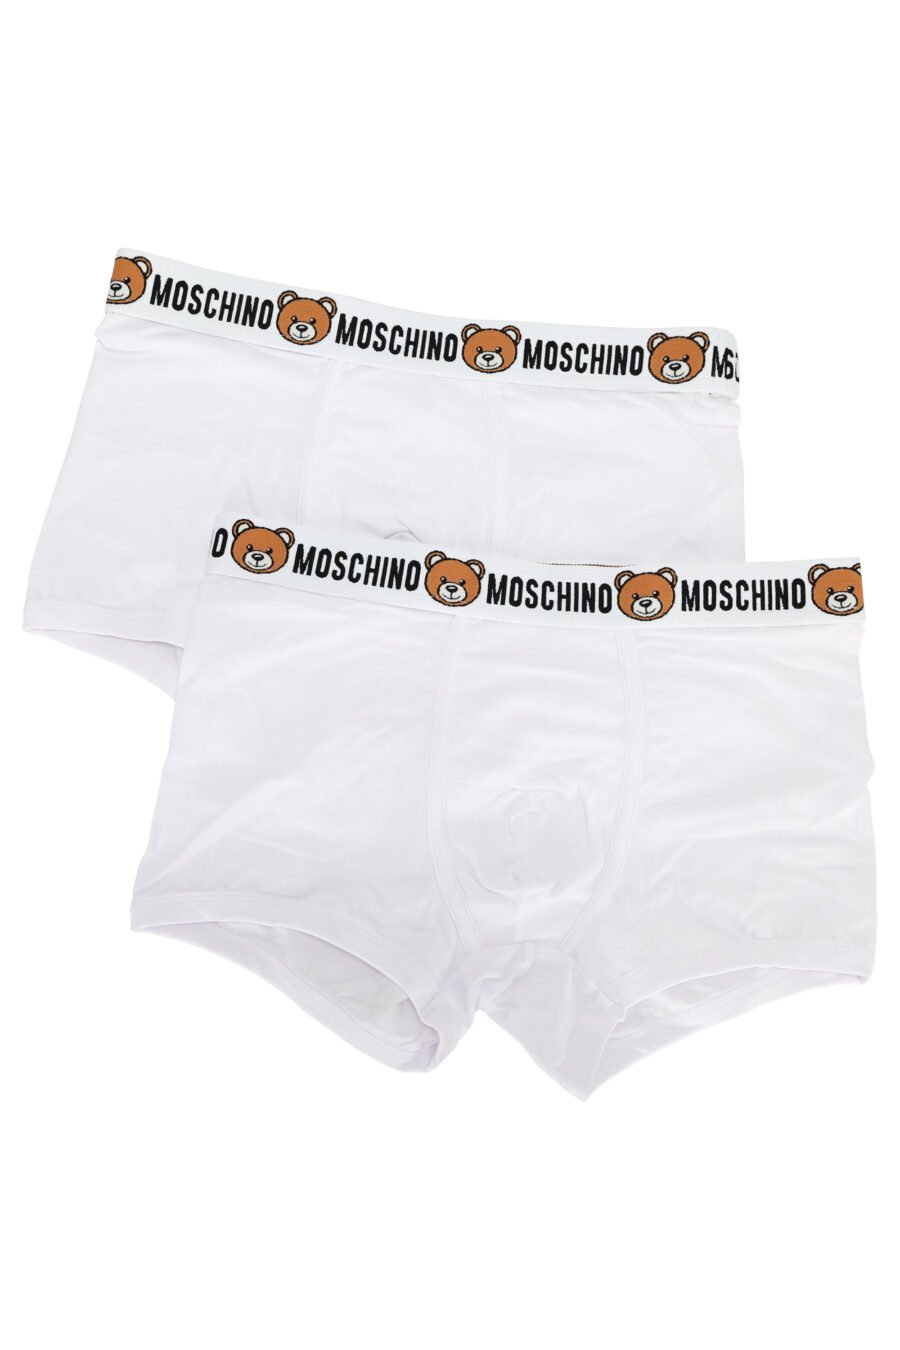 Pack de boxers blancos con logo oso en cinta - 667113612201